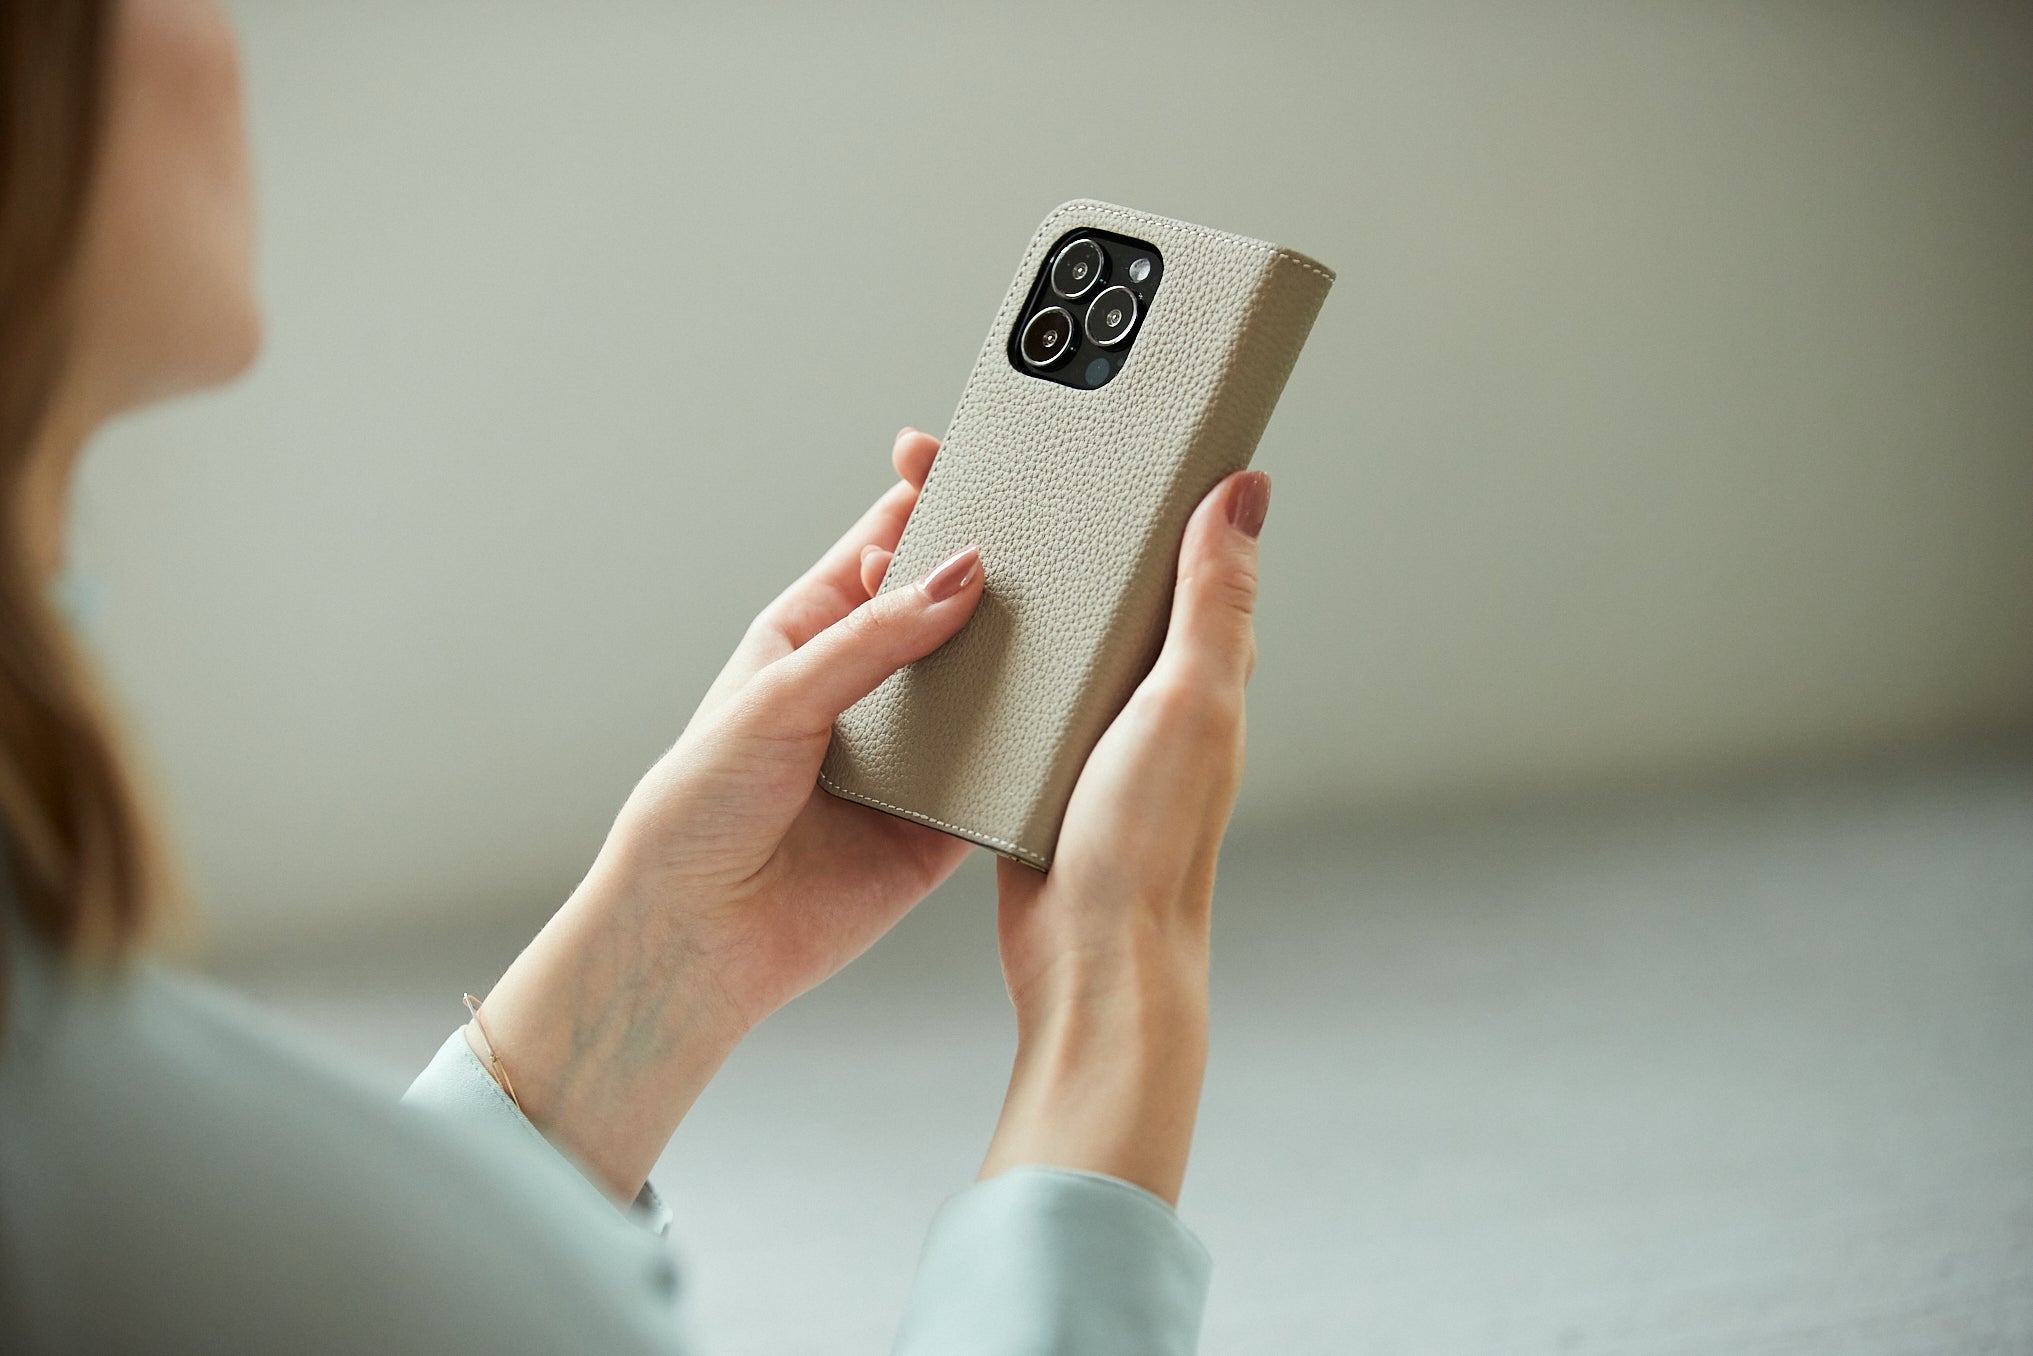 O husă BONAVENTURA pentru iPhone în vedere de detaliu, evidențiind calitatea pielii.